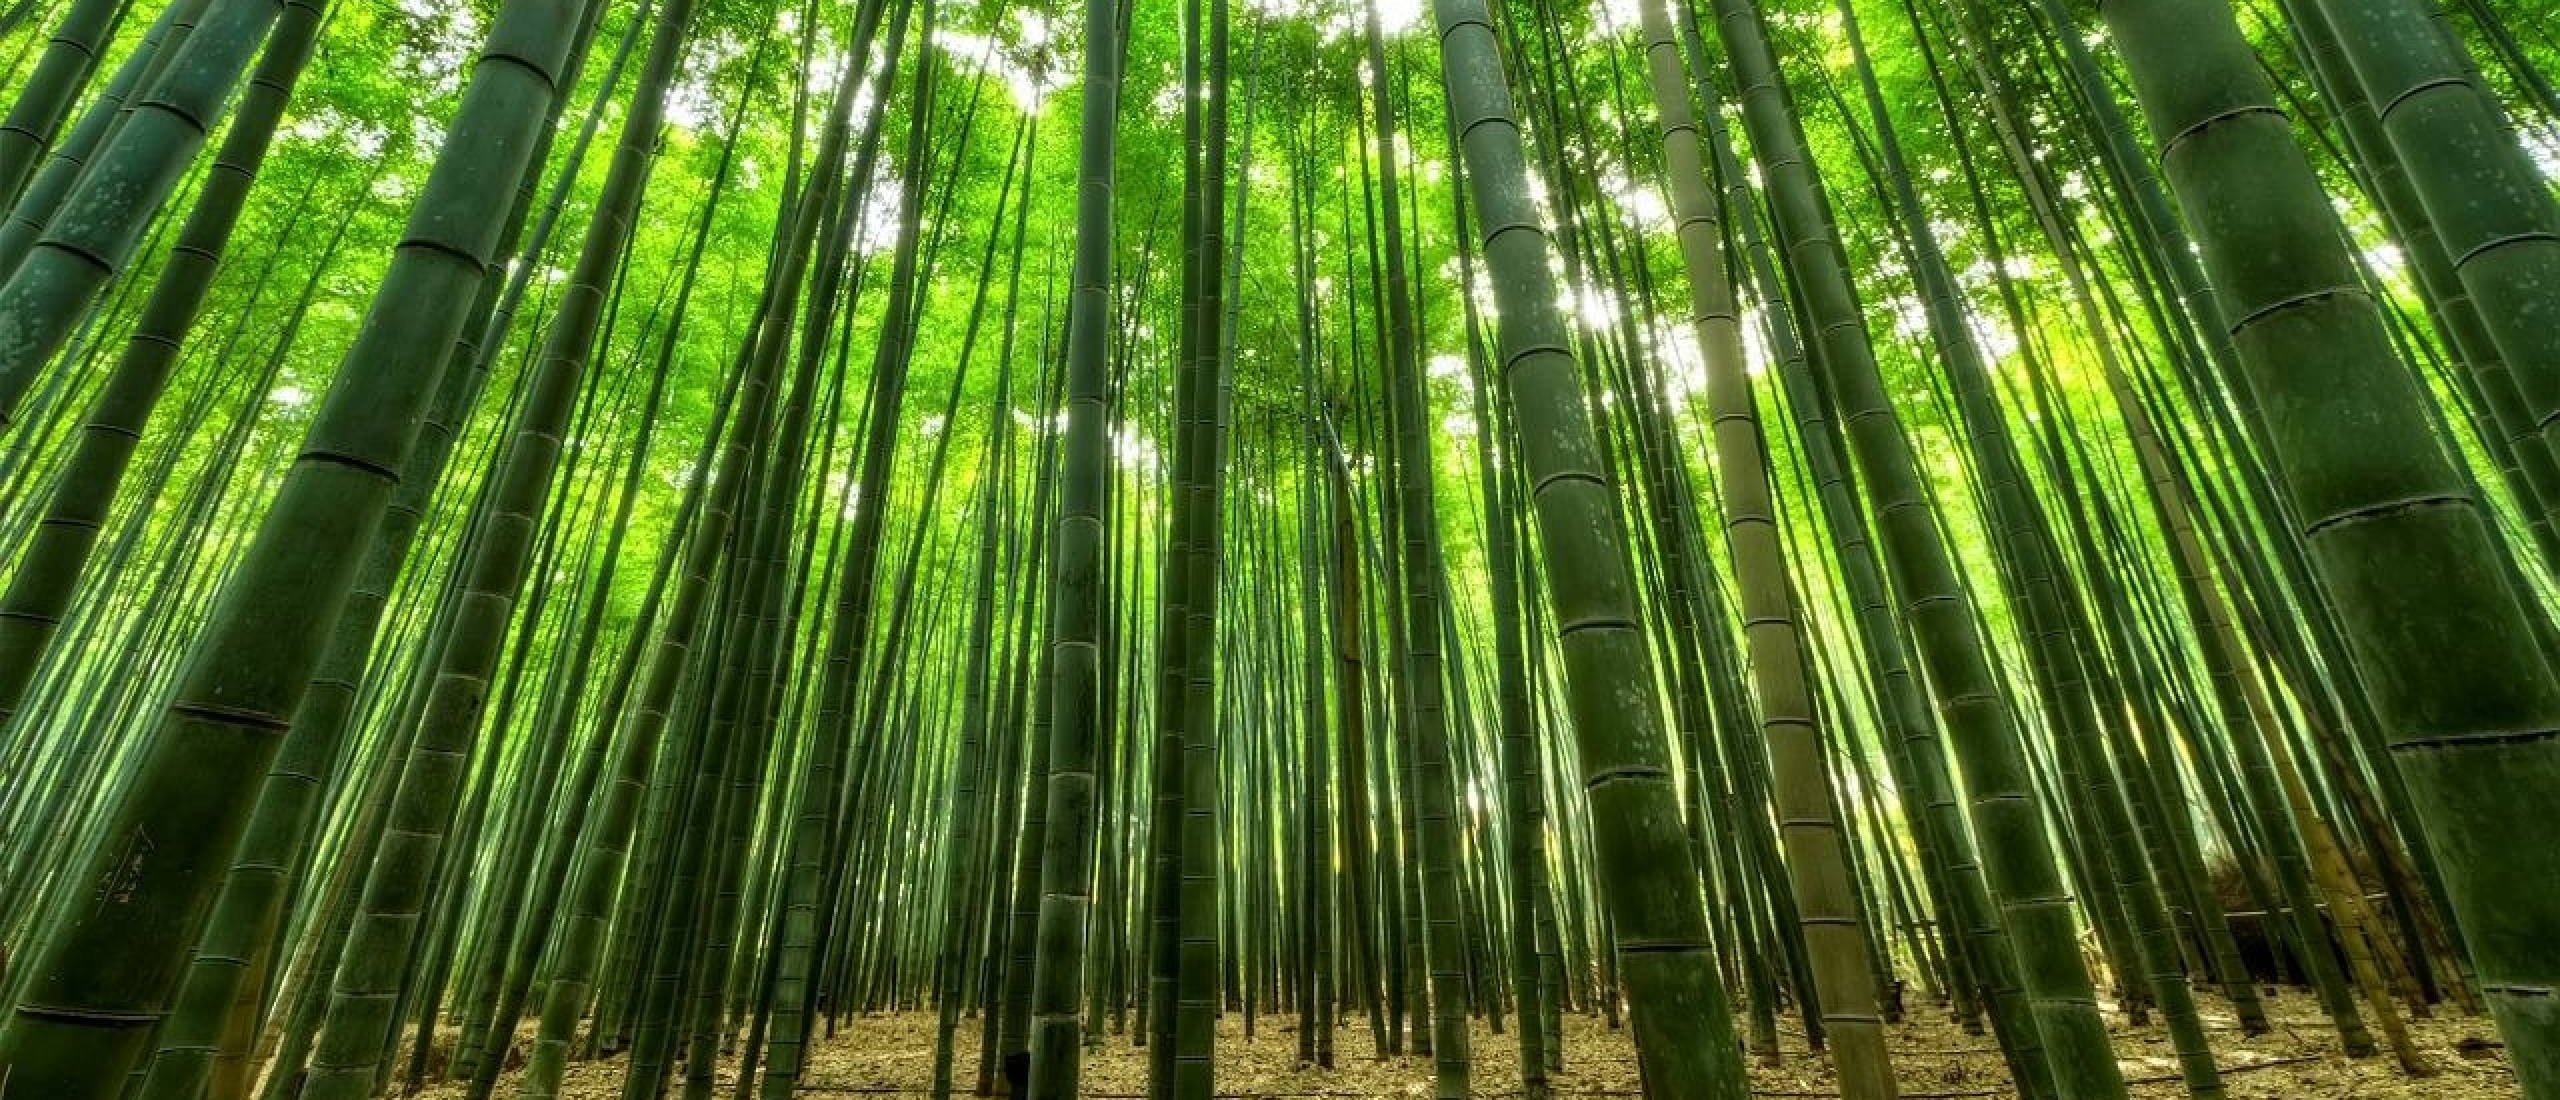 Bamboeparket voor een duurzamere toekomst